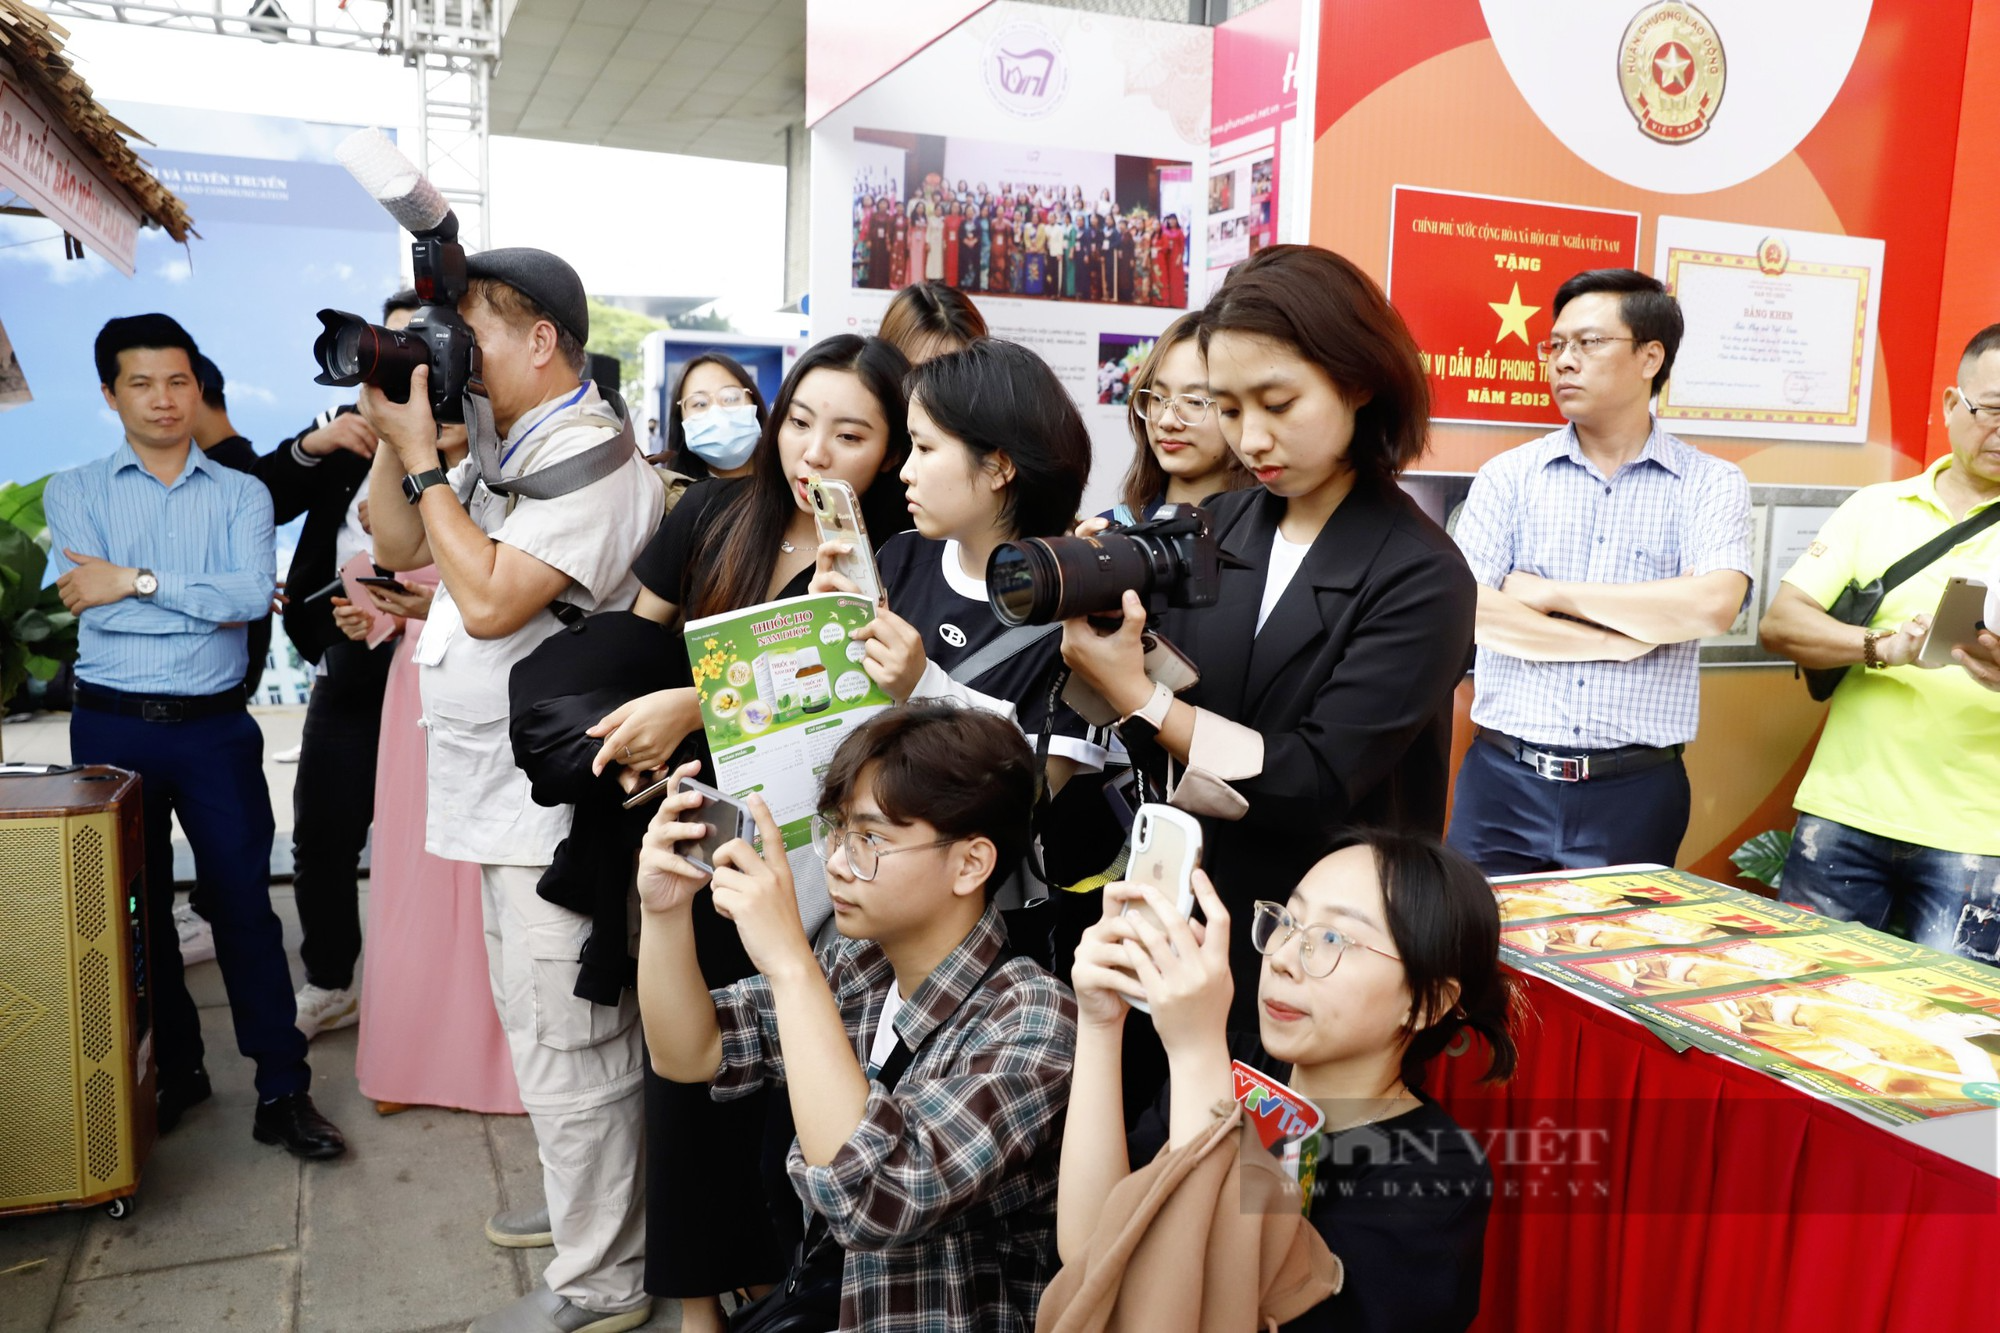 Giới trẻ hào hứng học nghề qua Talkshow “Báo chí kiến tạo” do báo NTNN/Dân Việt tổ chức - Ảnh 8.